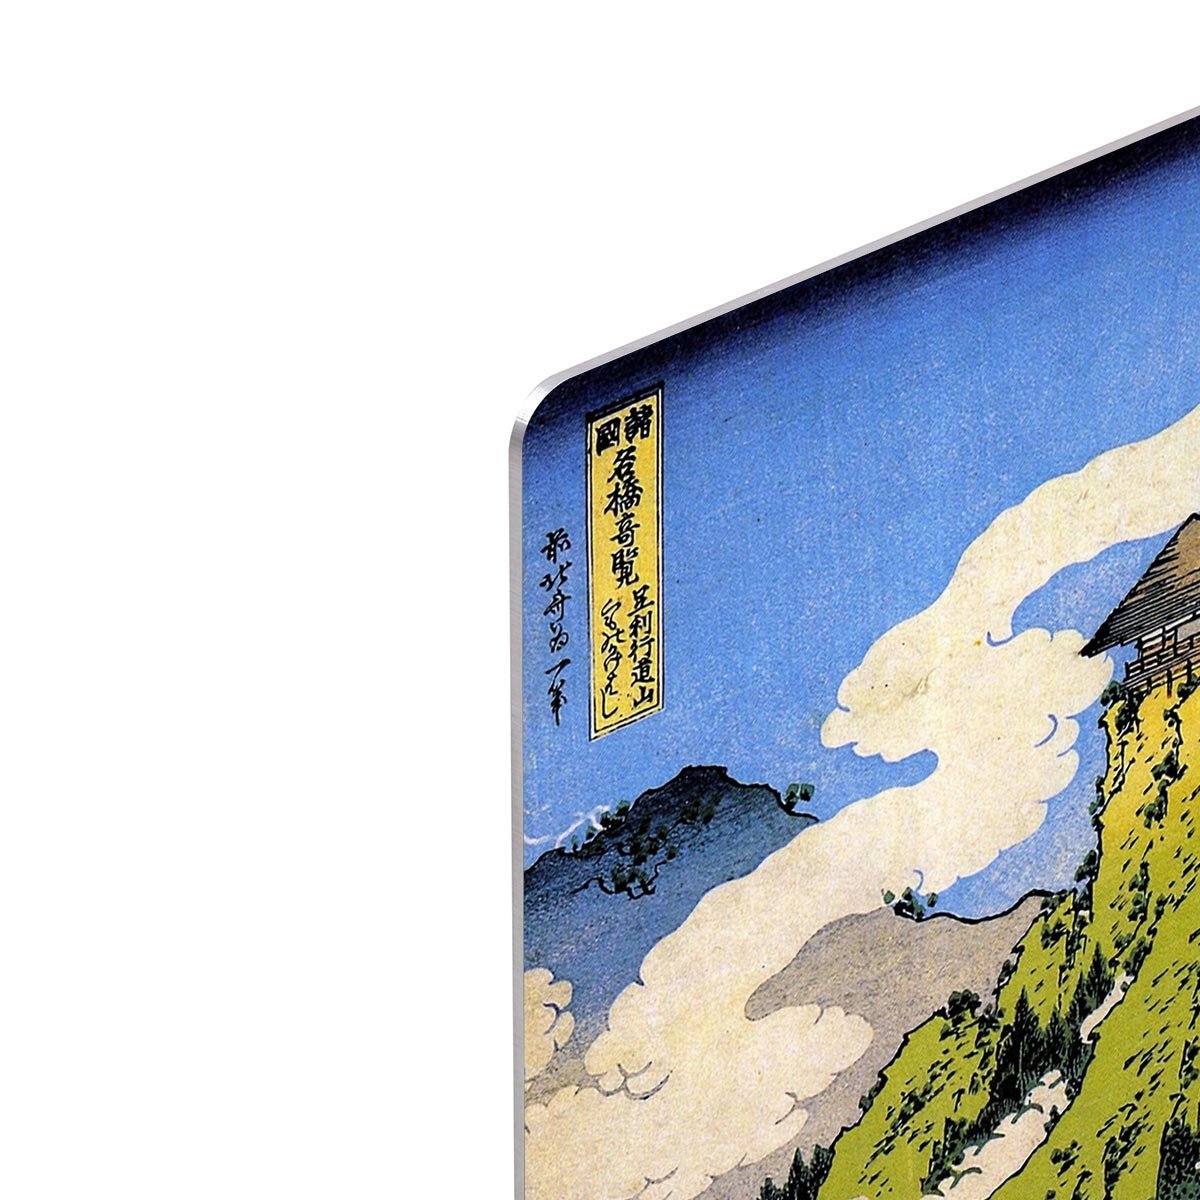 Temple bridge by Hokusai HD Metal Print